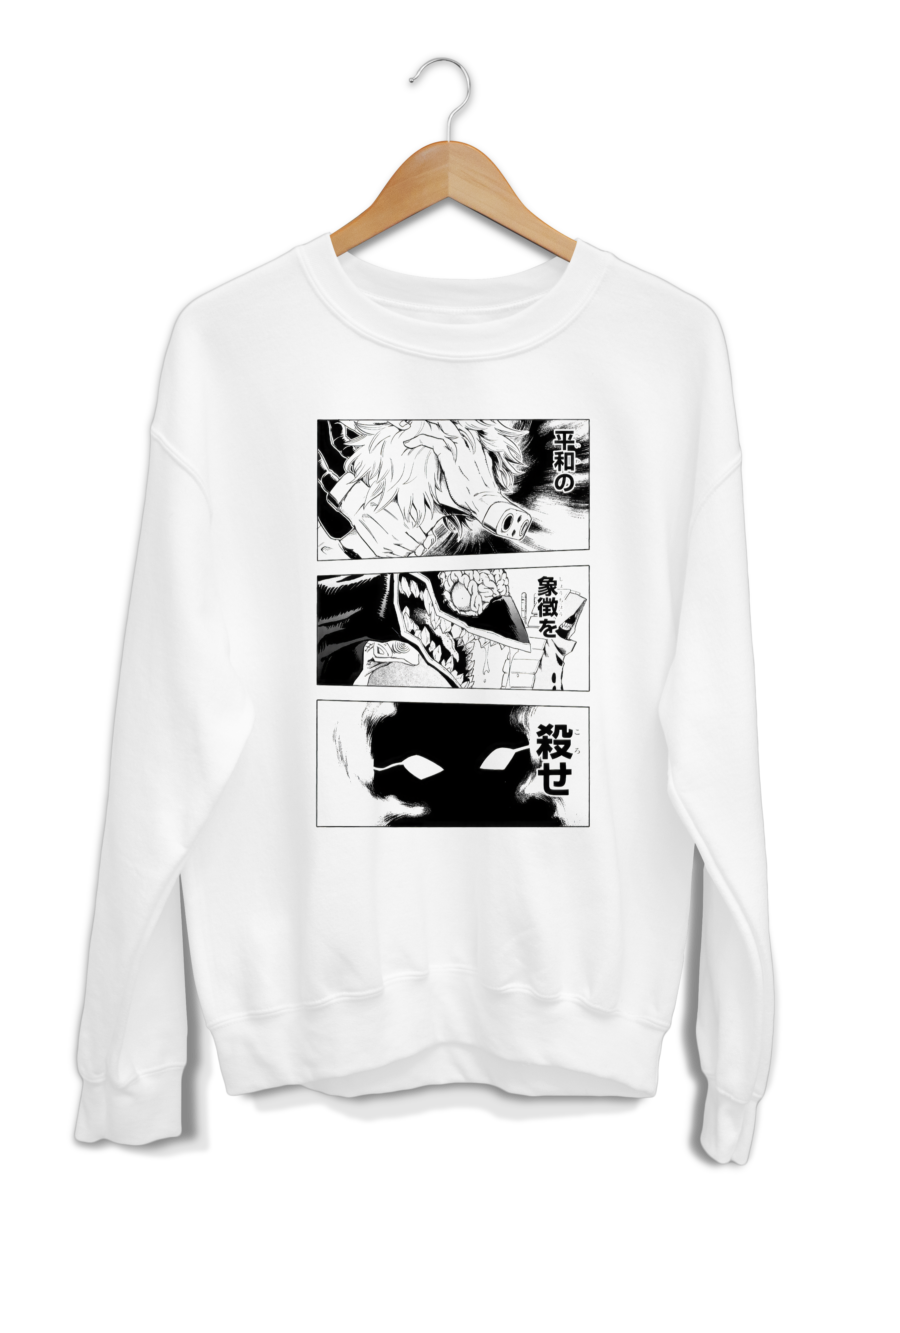 Kill the symbol Shigaraki and nomus Sweatshirt t-shirt design